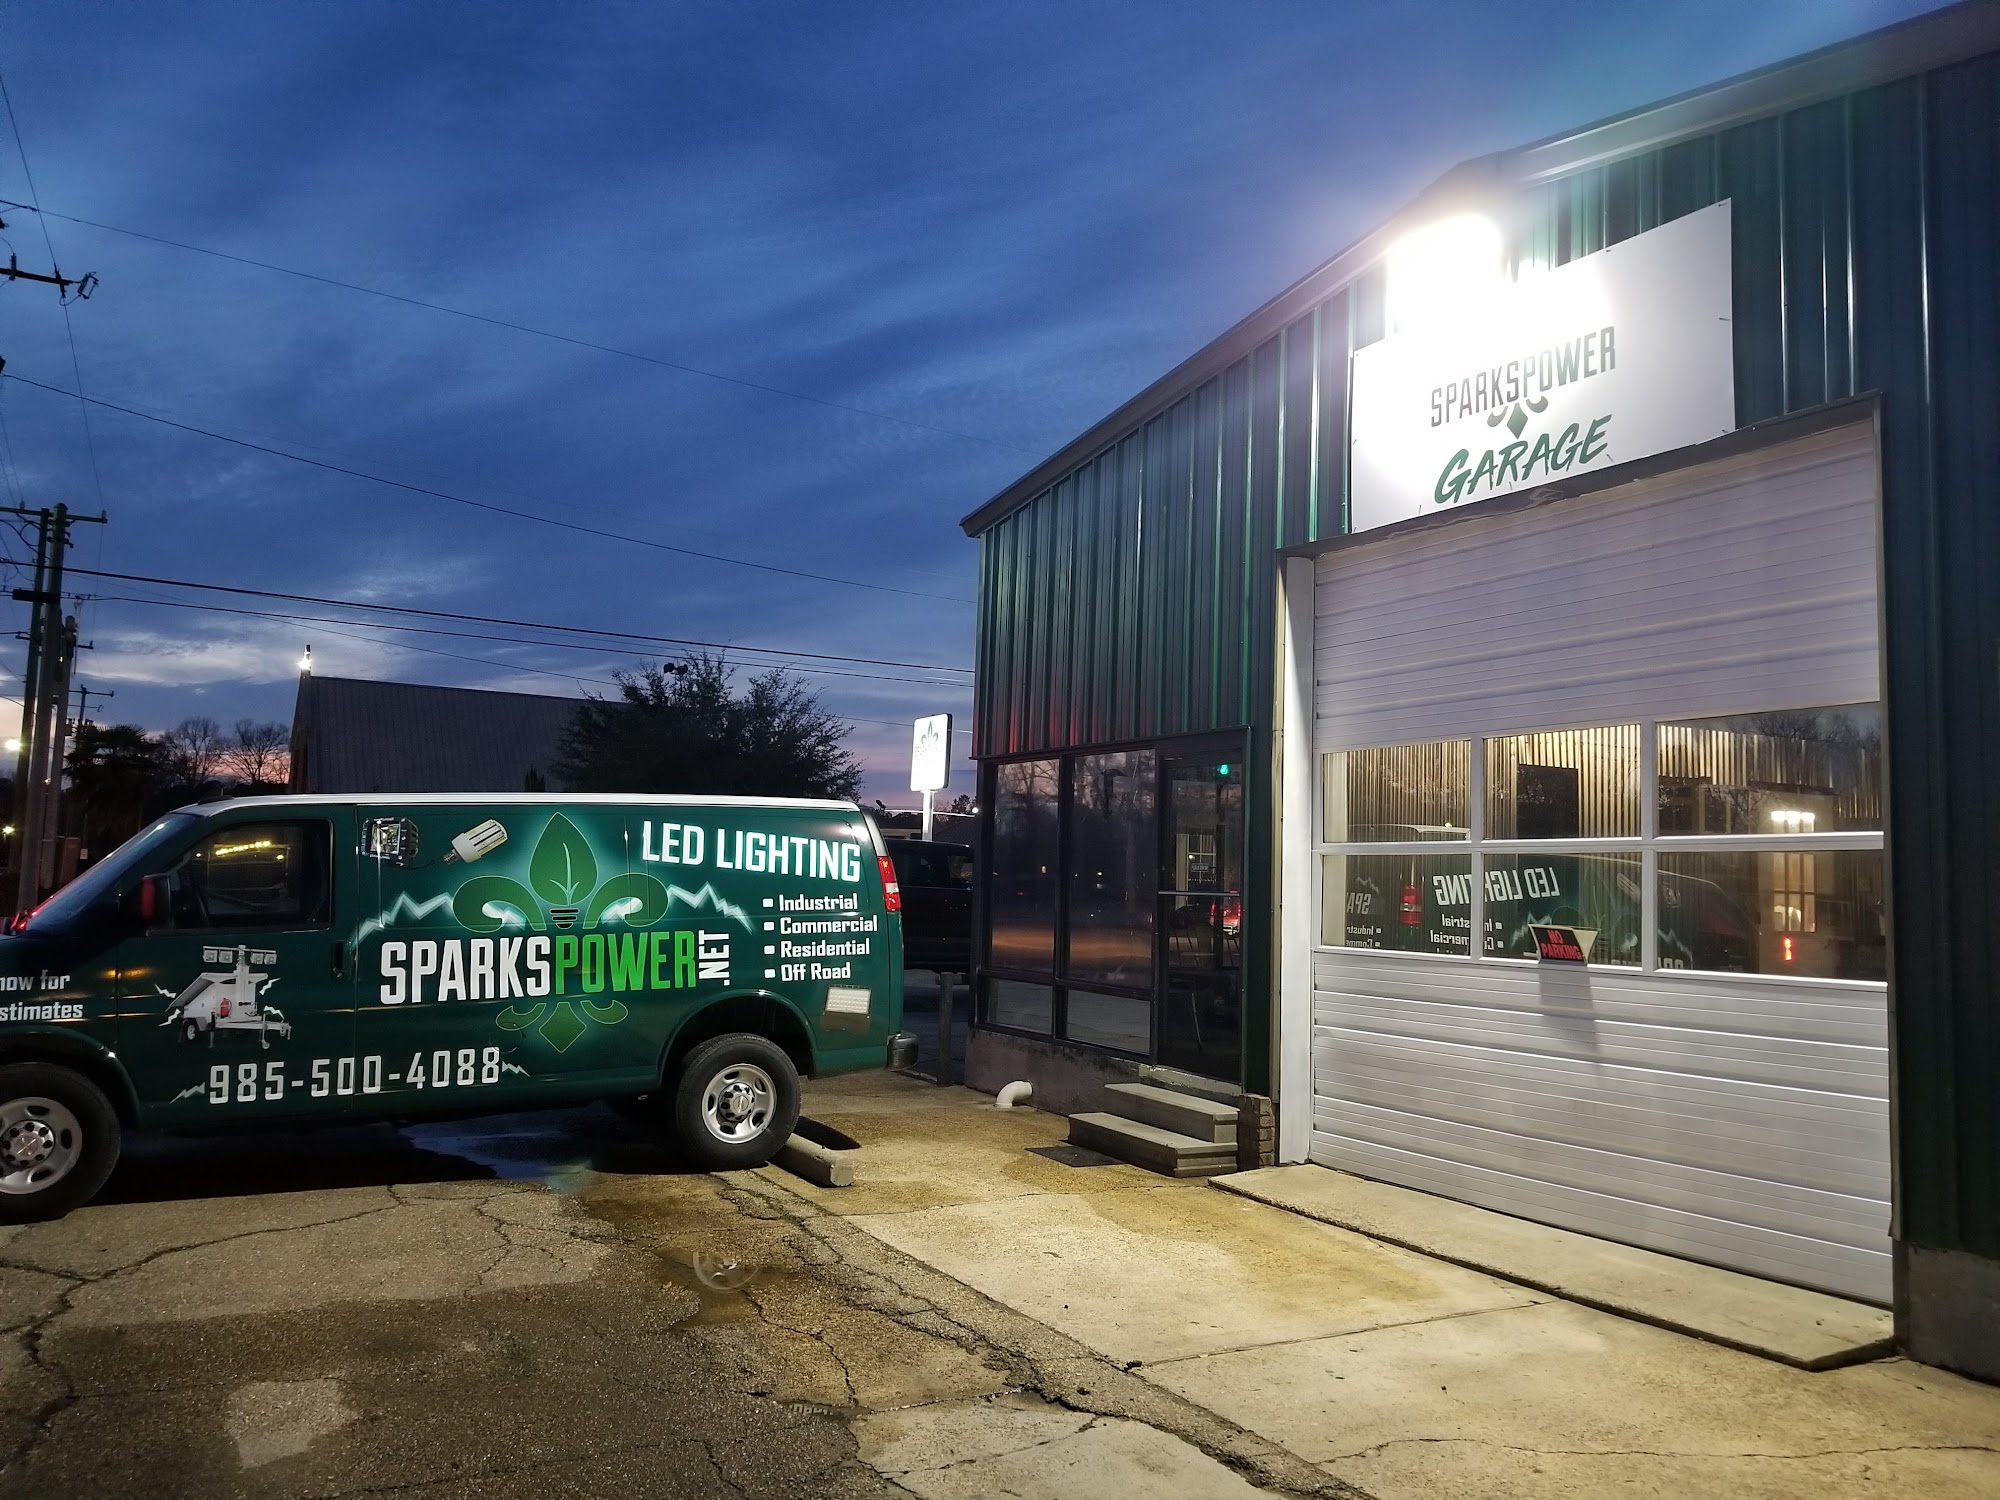 Sparks Power Garage